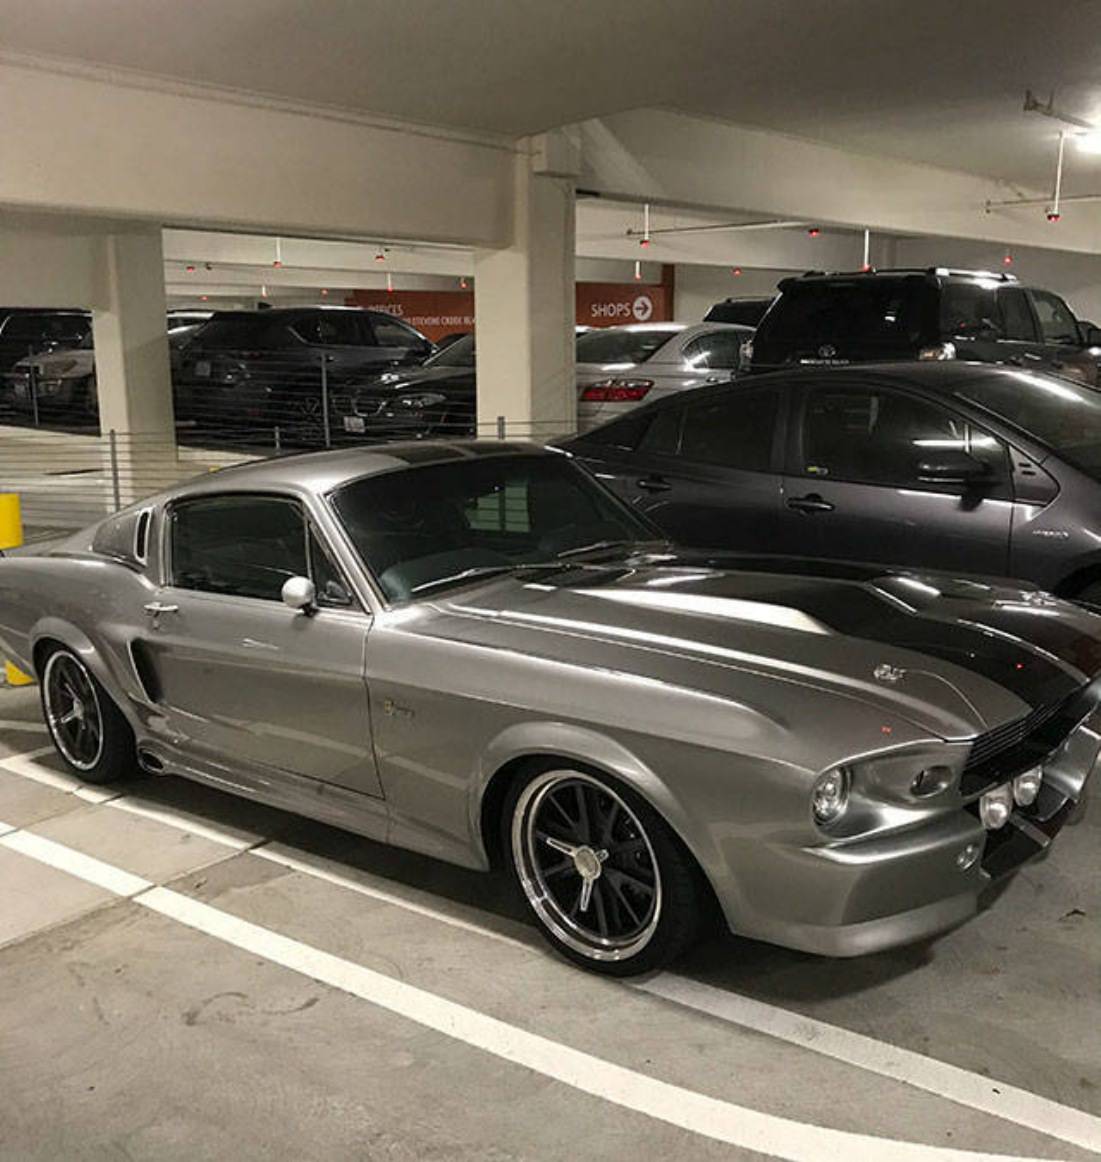 Nice Mustang